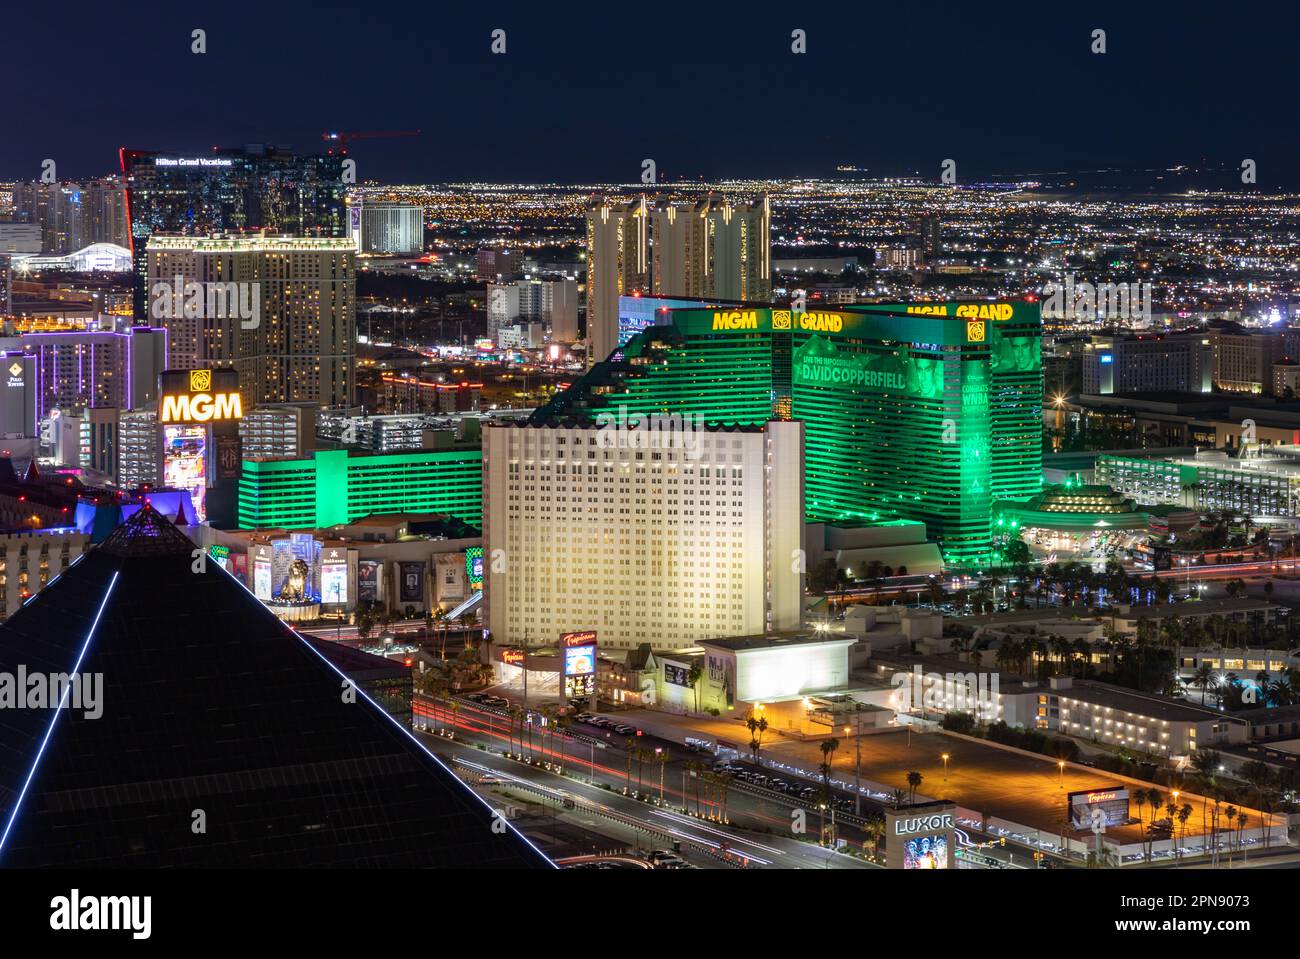 Ein Bild von Las Vegas bei Nacht, das das MGM Grand und das Tropicana Las Vegas - A DoubleTree by Hilton Hotel zeigt. Stockfoto